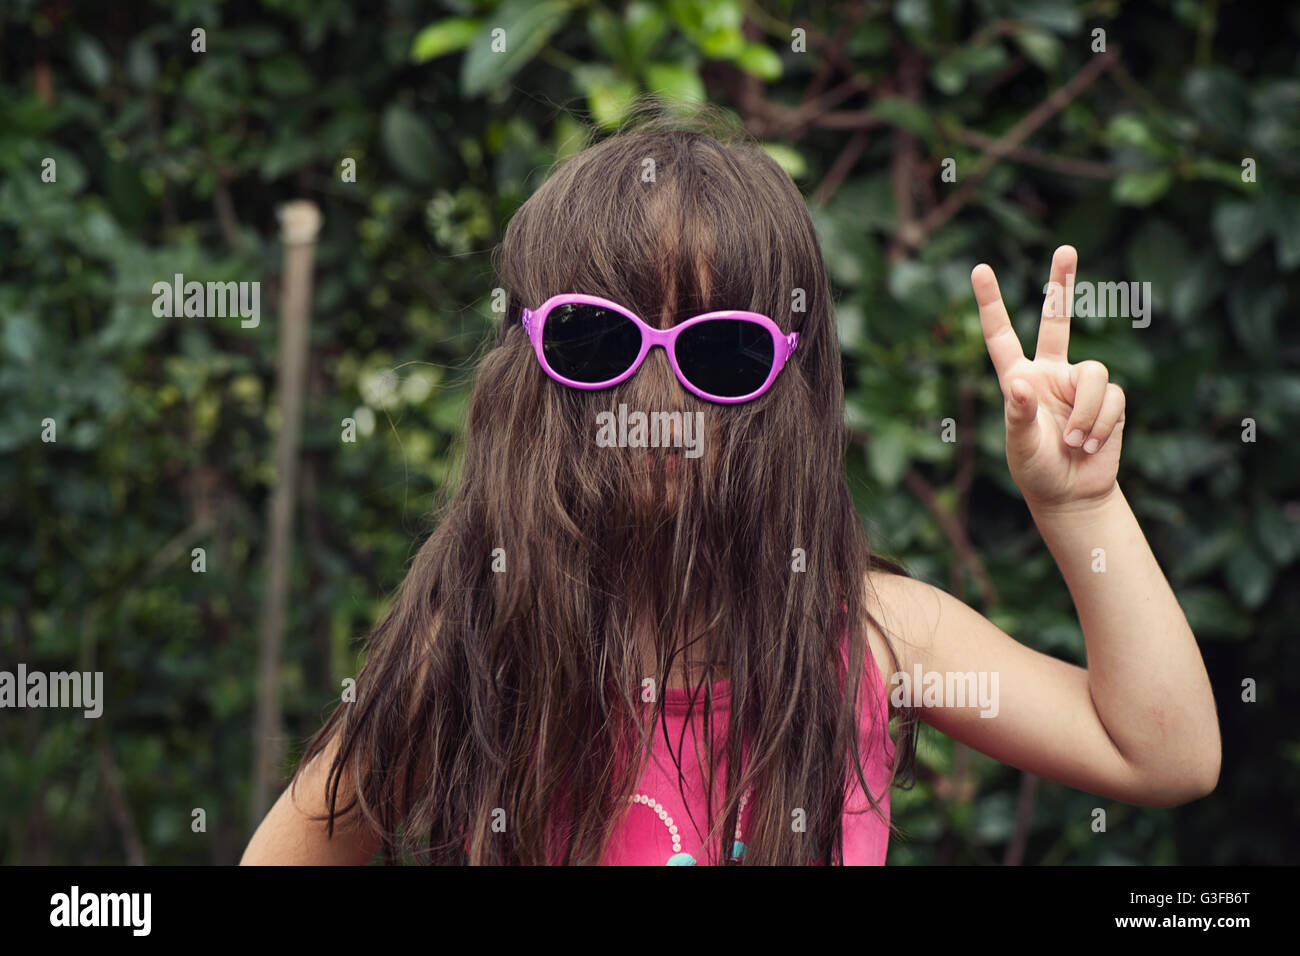 Petite fille aux cheveux sur visage portant des lunettes de soleil,montrant un signe de paix Banque D'Images